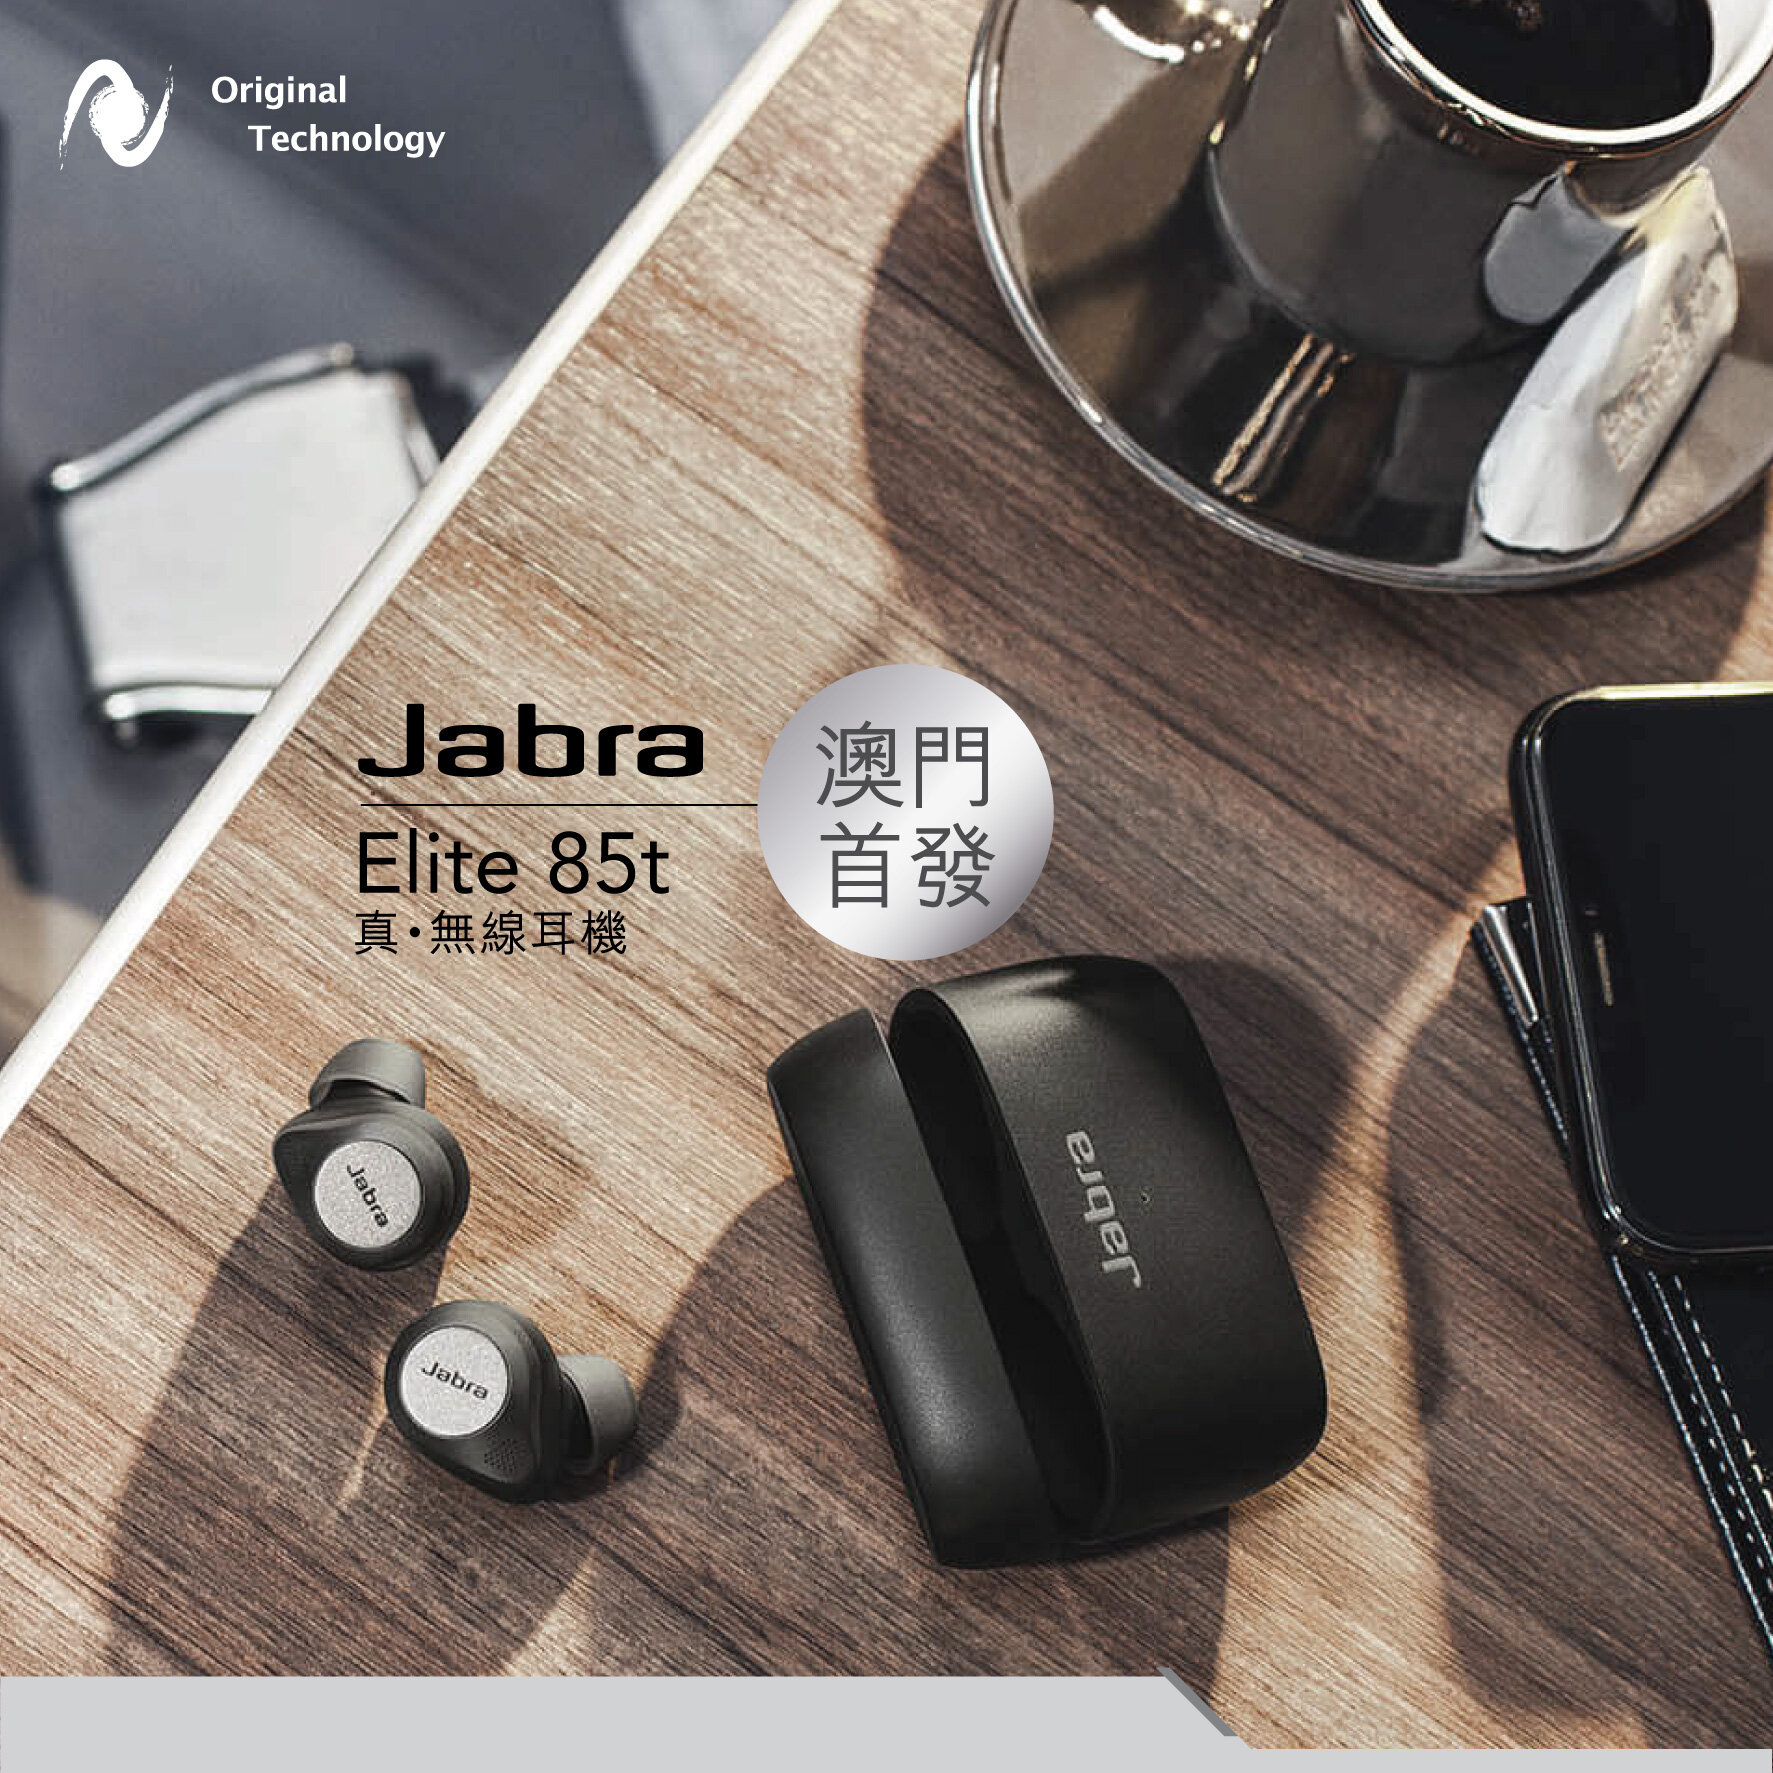 精準降噪的真無線耳機 – Jabra Elite 85t